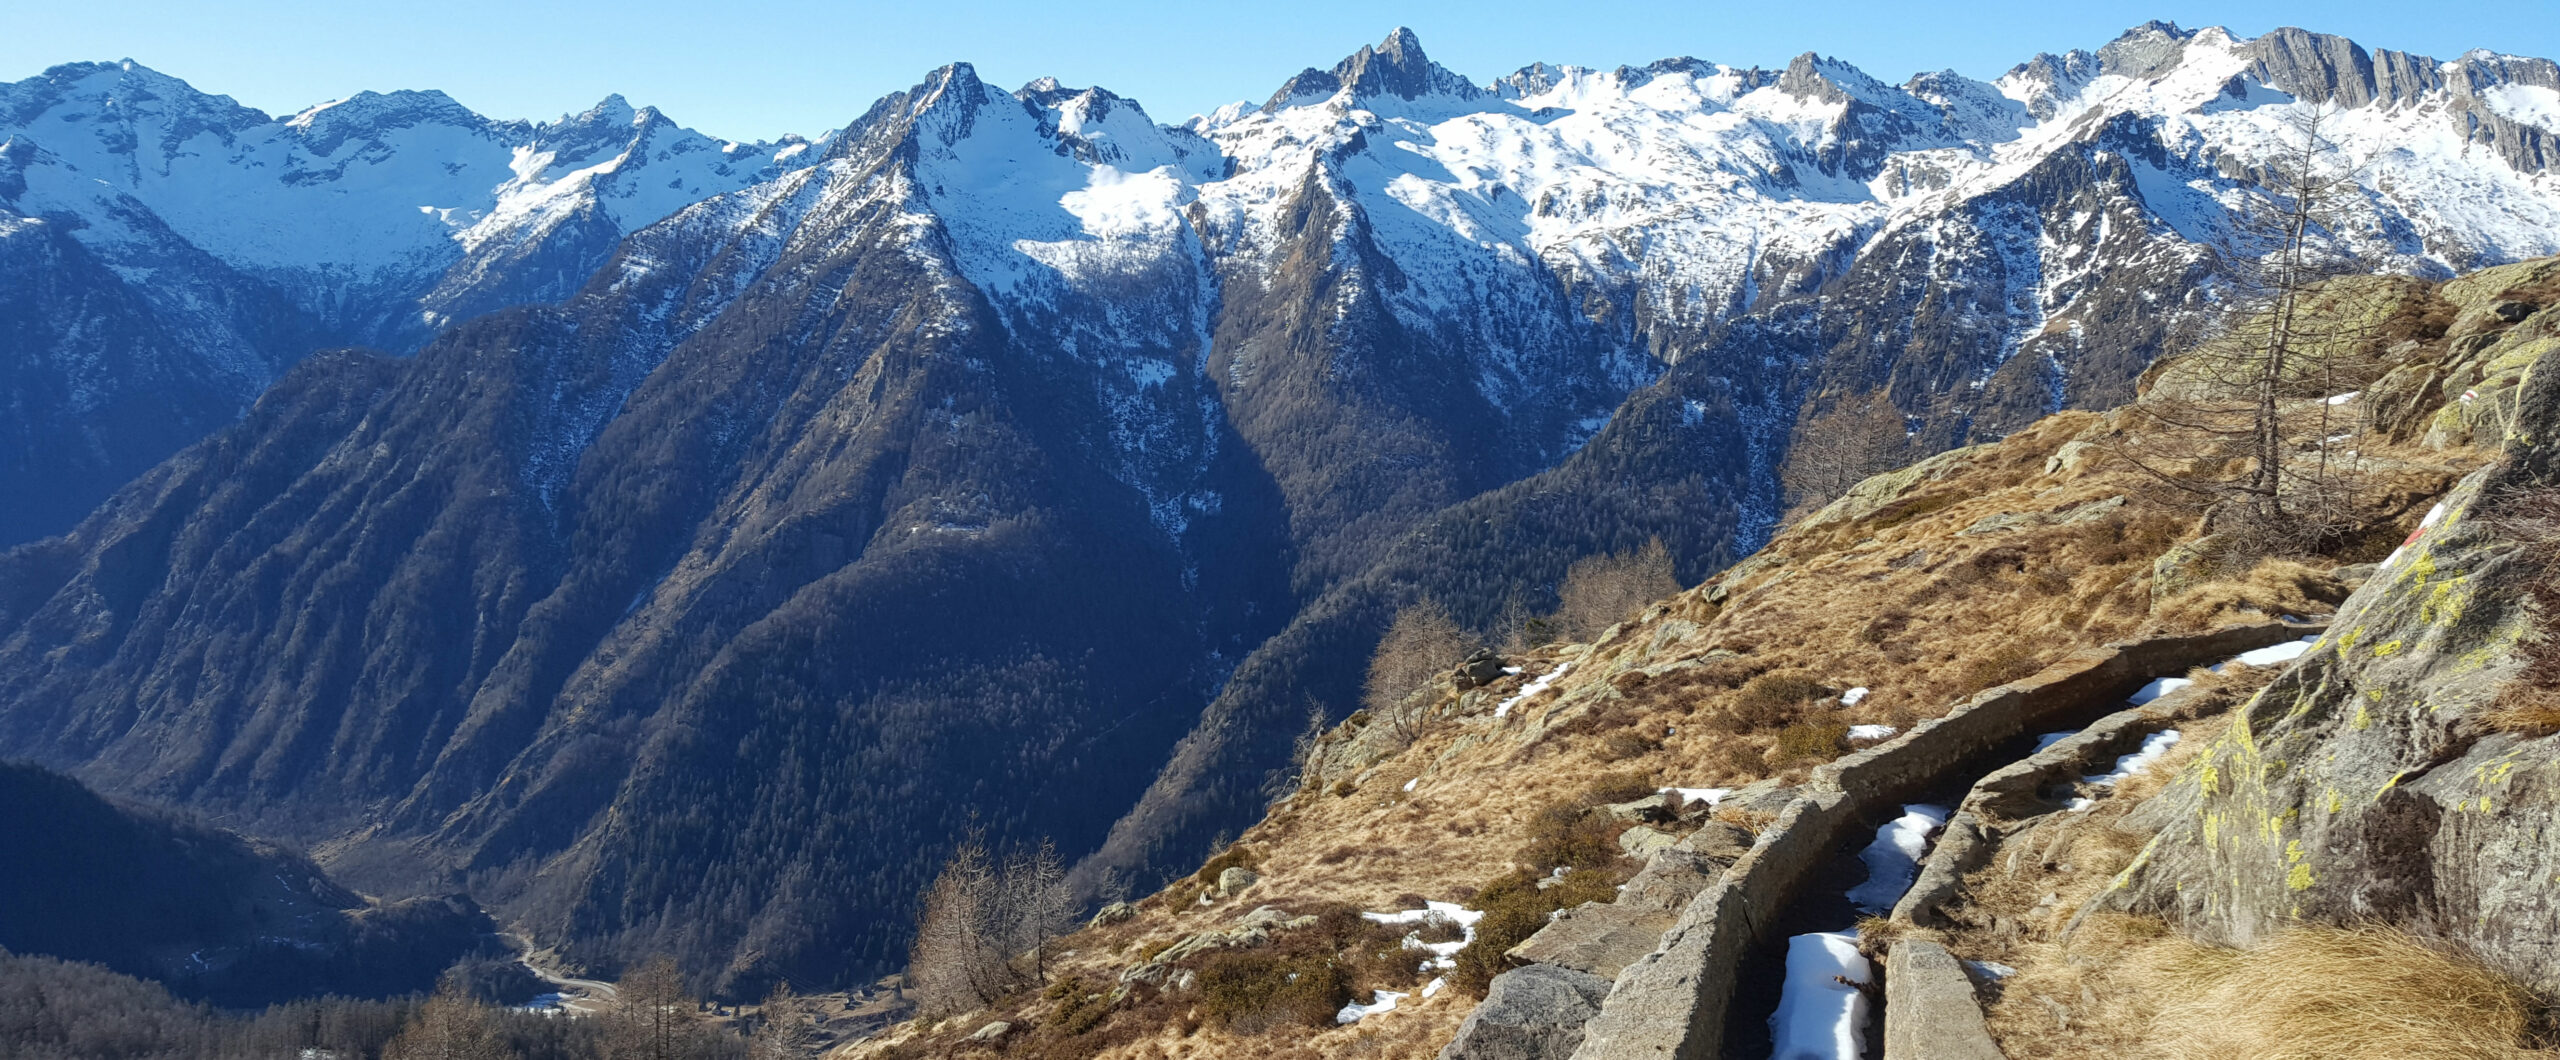 Ein Bergweg auf 2100 Meter im Februar fast schneefrei bei strahlendem Himmel mit hohen Bergen im Hintergrund